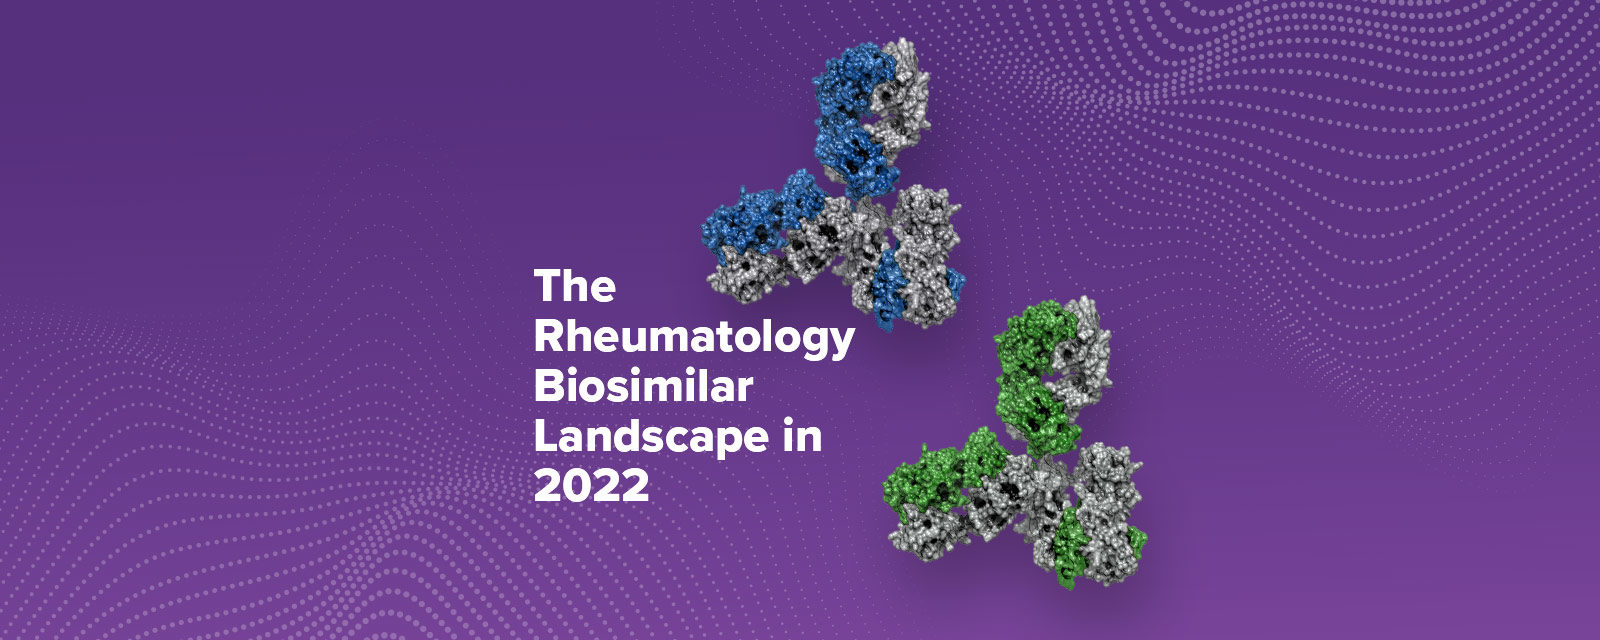 The Rheumatology Biosimilar Landscape in 2022